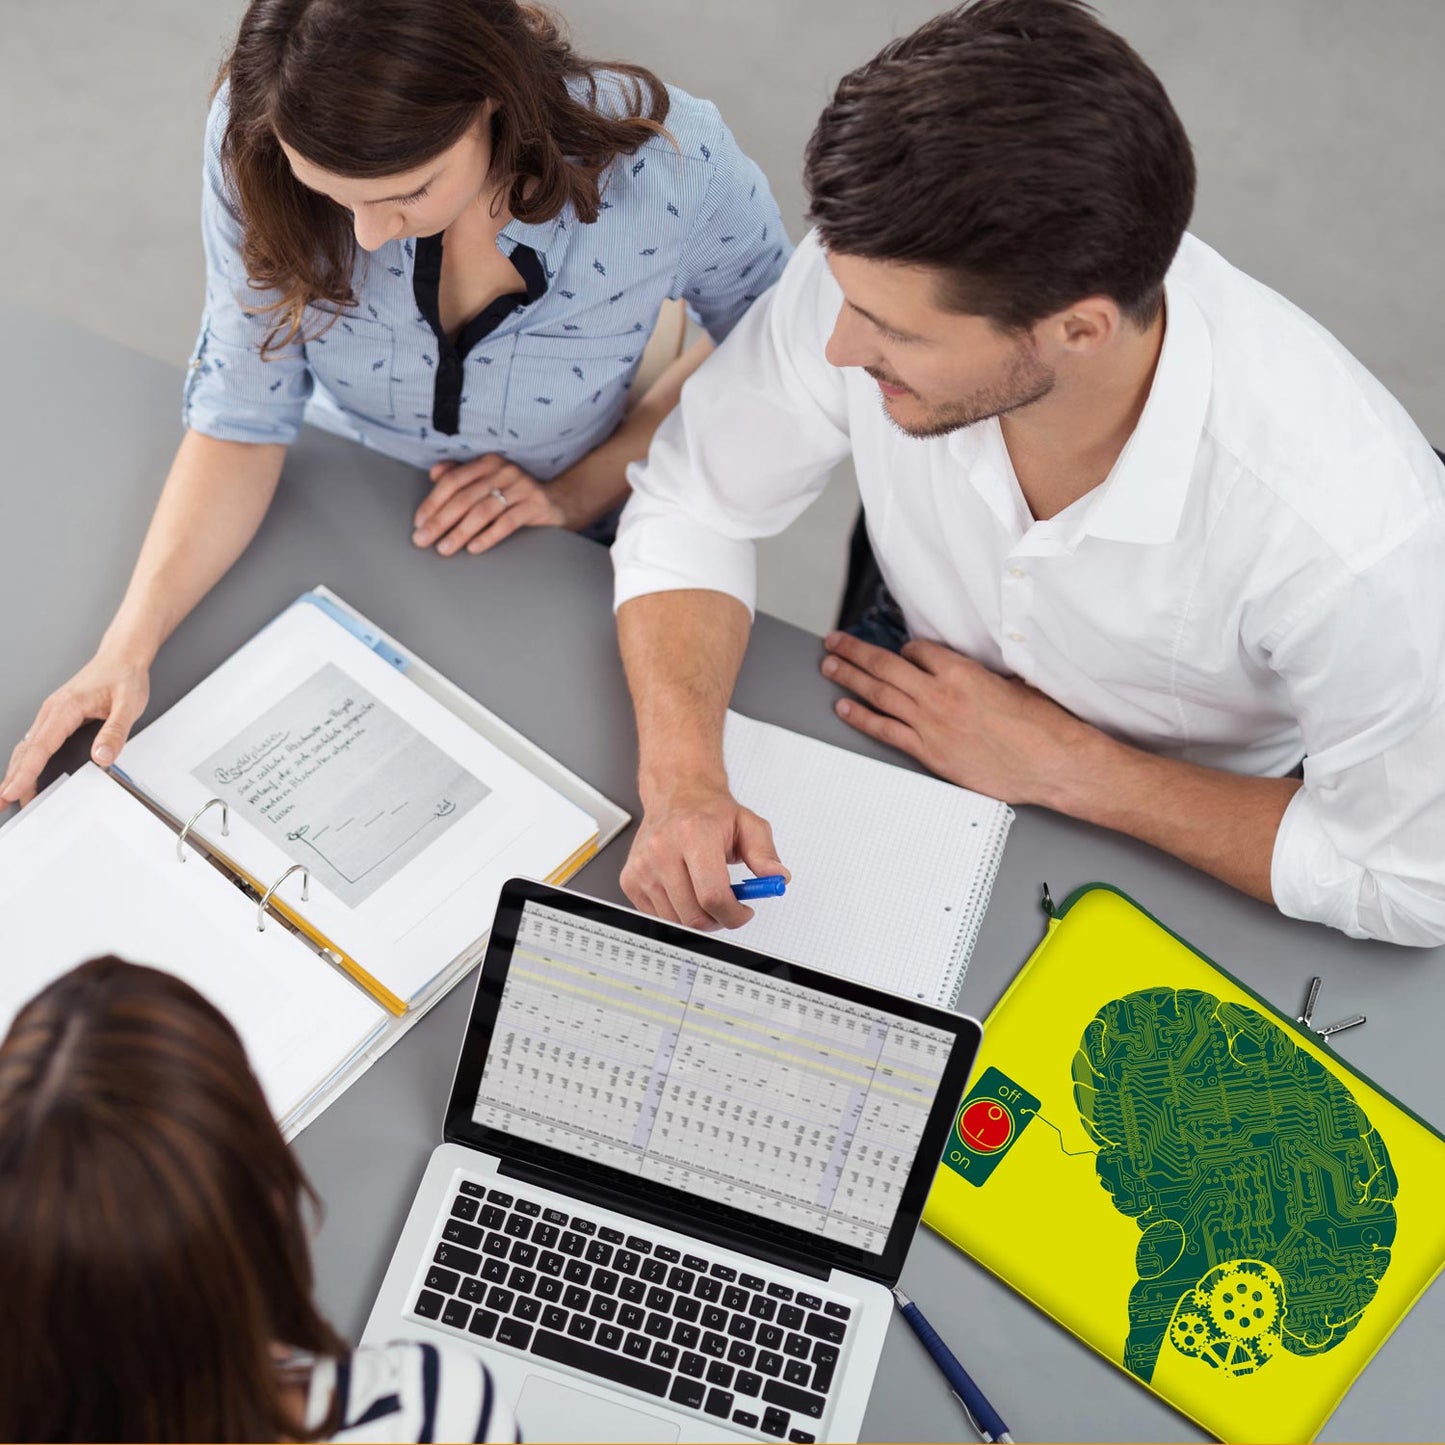 LS166 IT-Brain Designer Schutzhülle für Laptop in gelb-grün als Business-Zubehör im Büro, bei Kunden und auf Dienstreisen